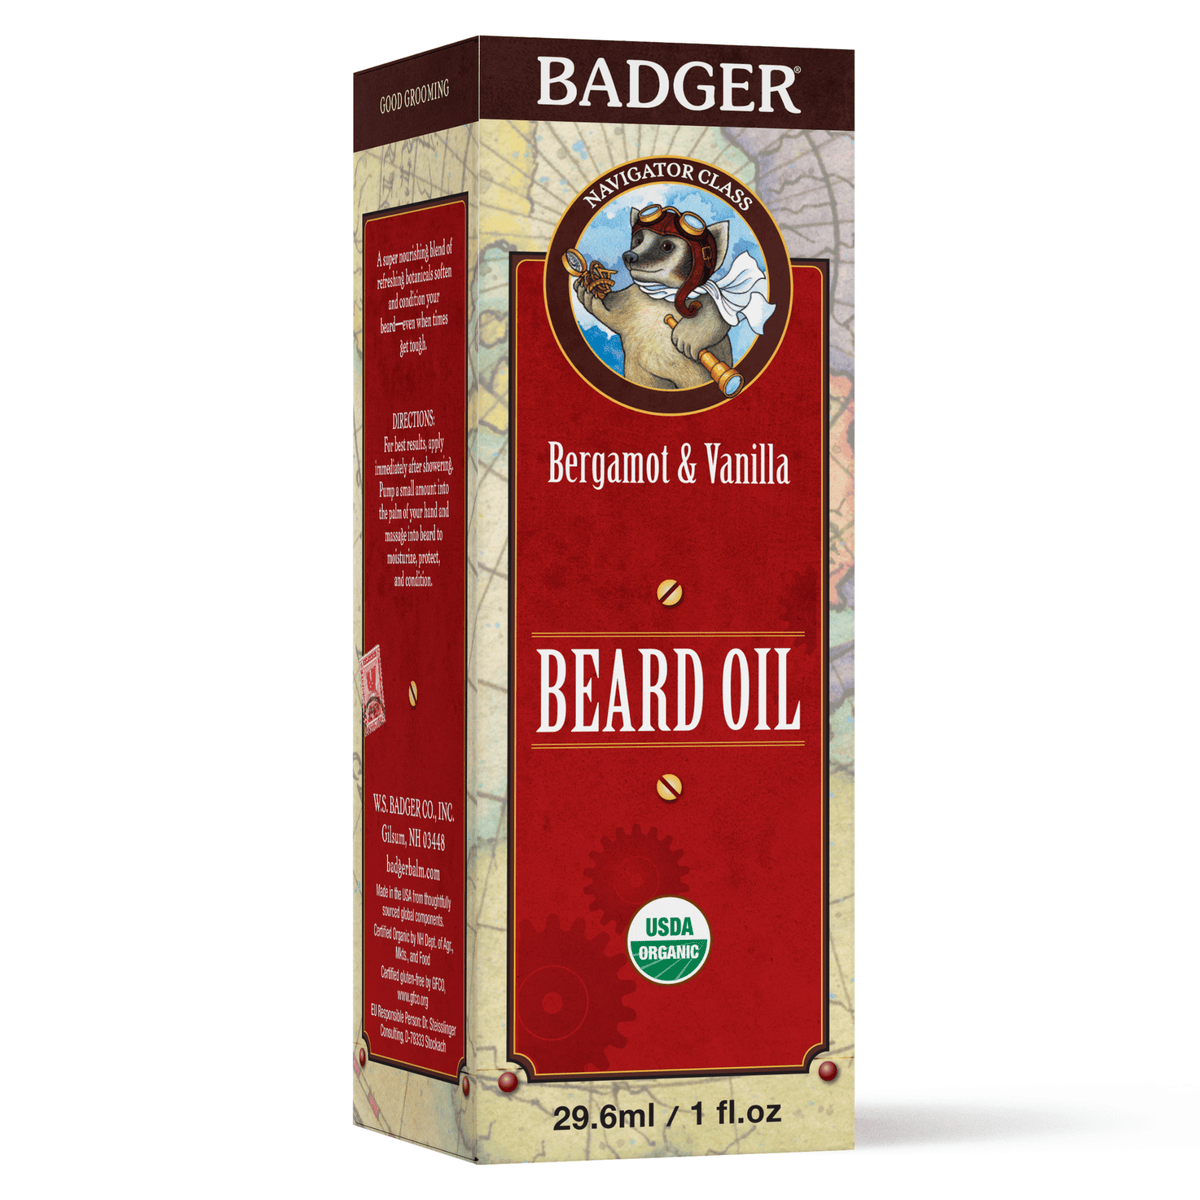 Alternate Image of Beard Oil Box